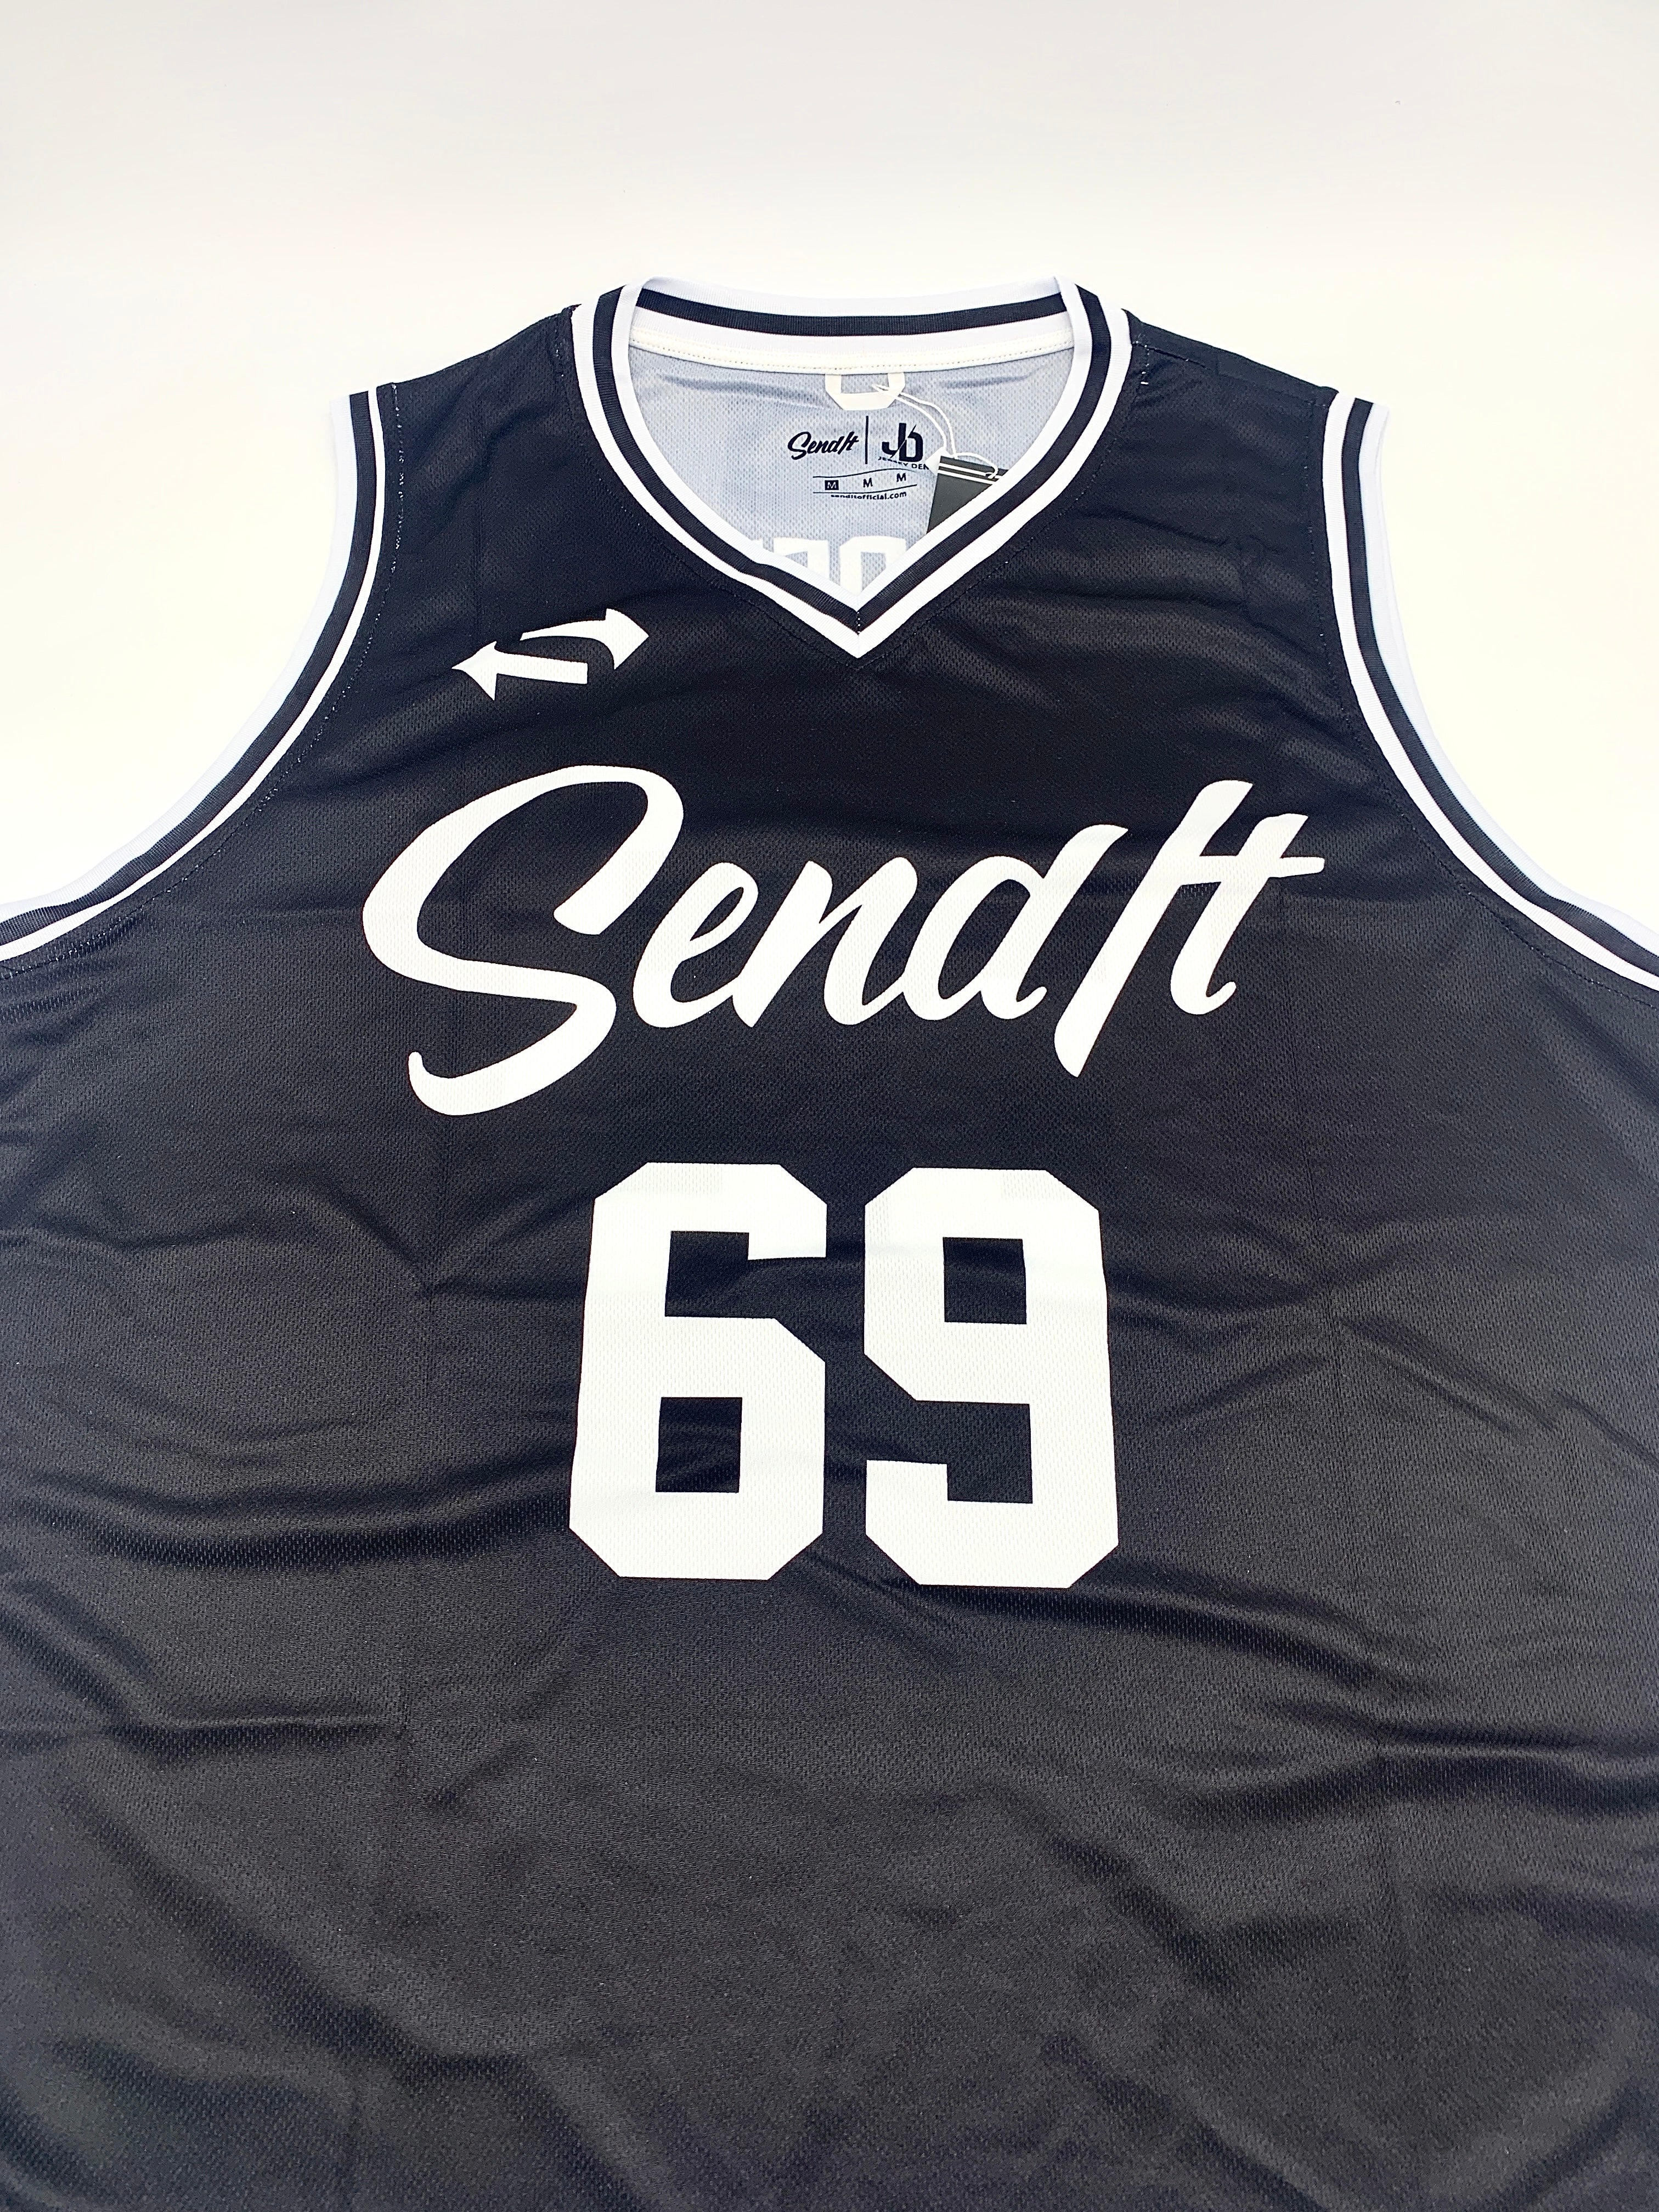 Customizable Send It ™ Basketball Jersey